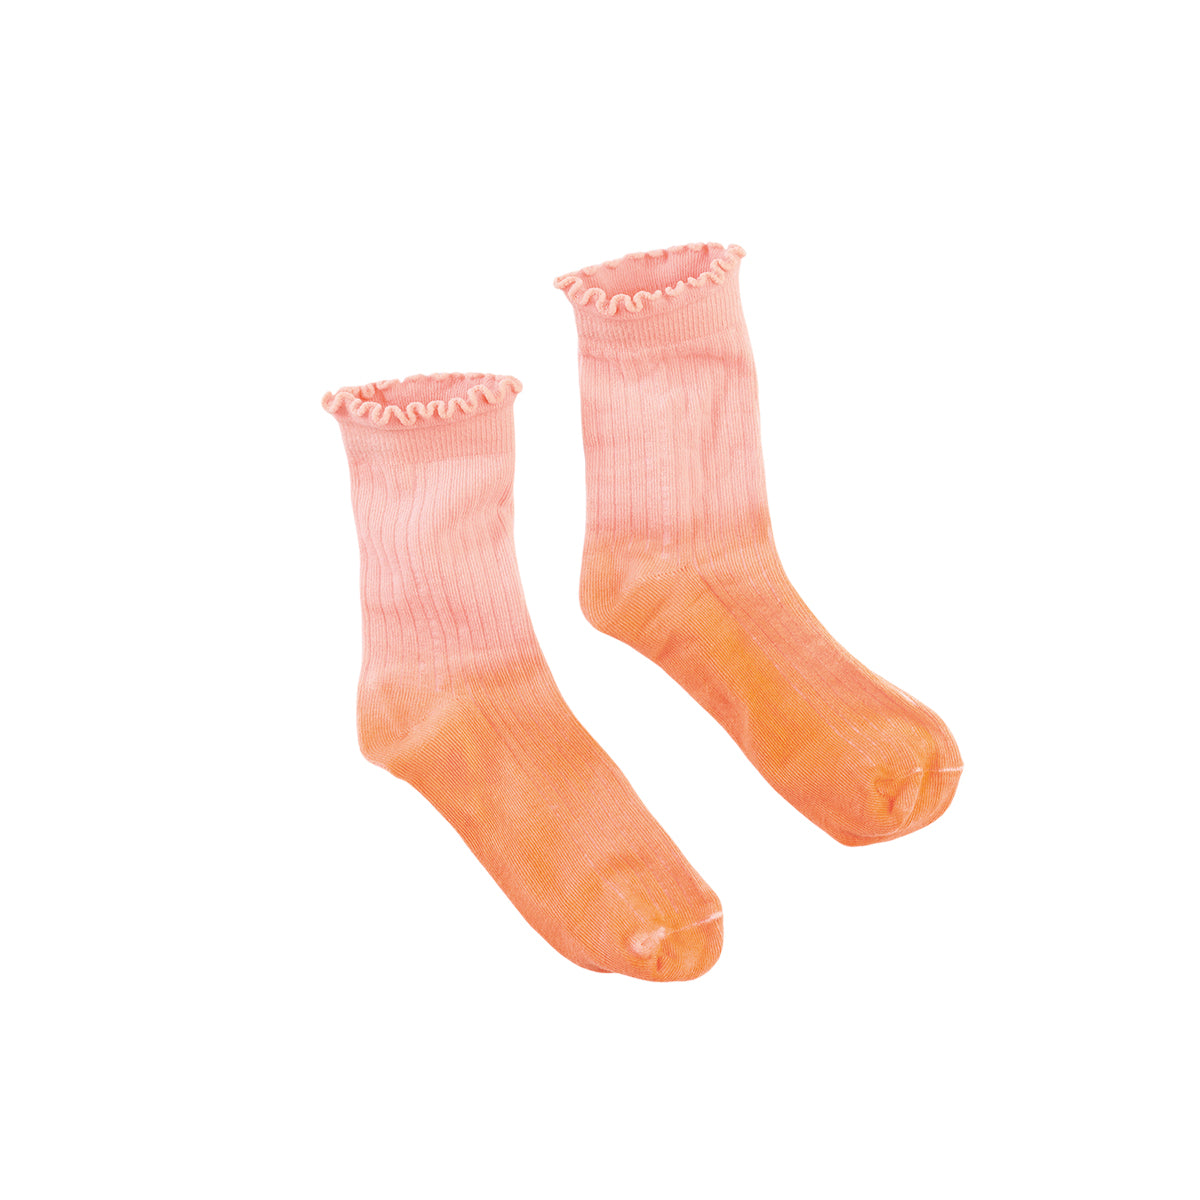 Z8 Socks Nevin S22 Puffy peach